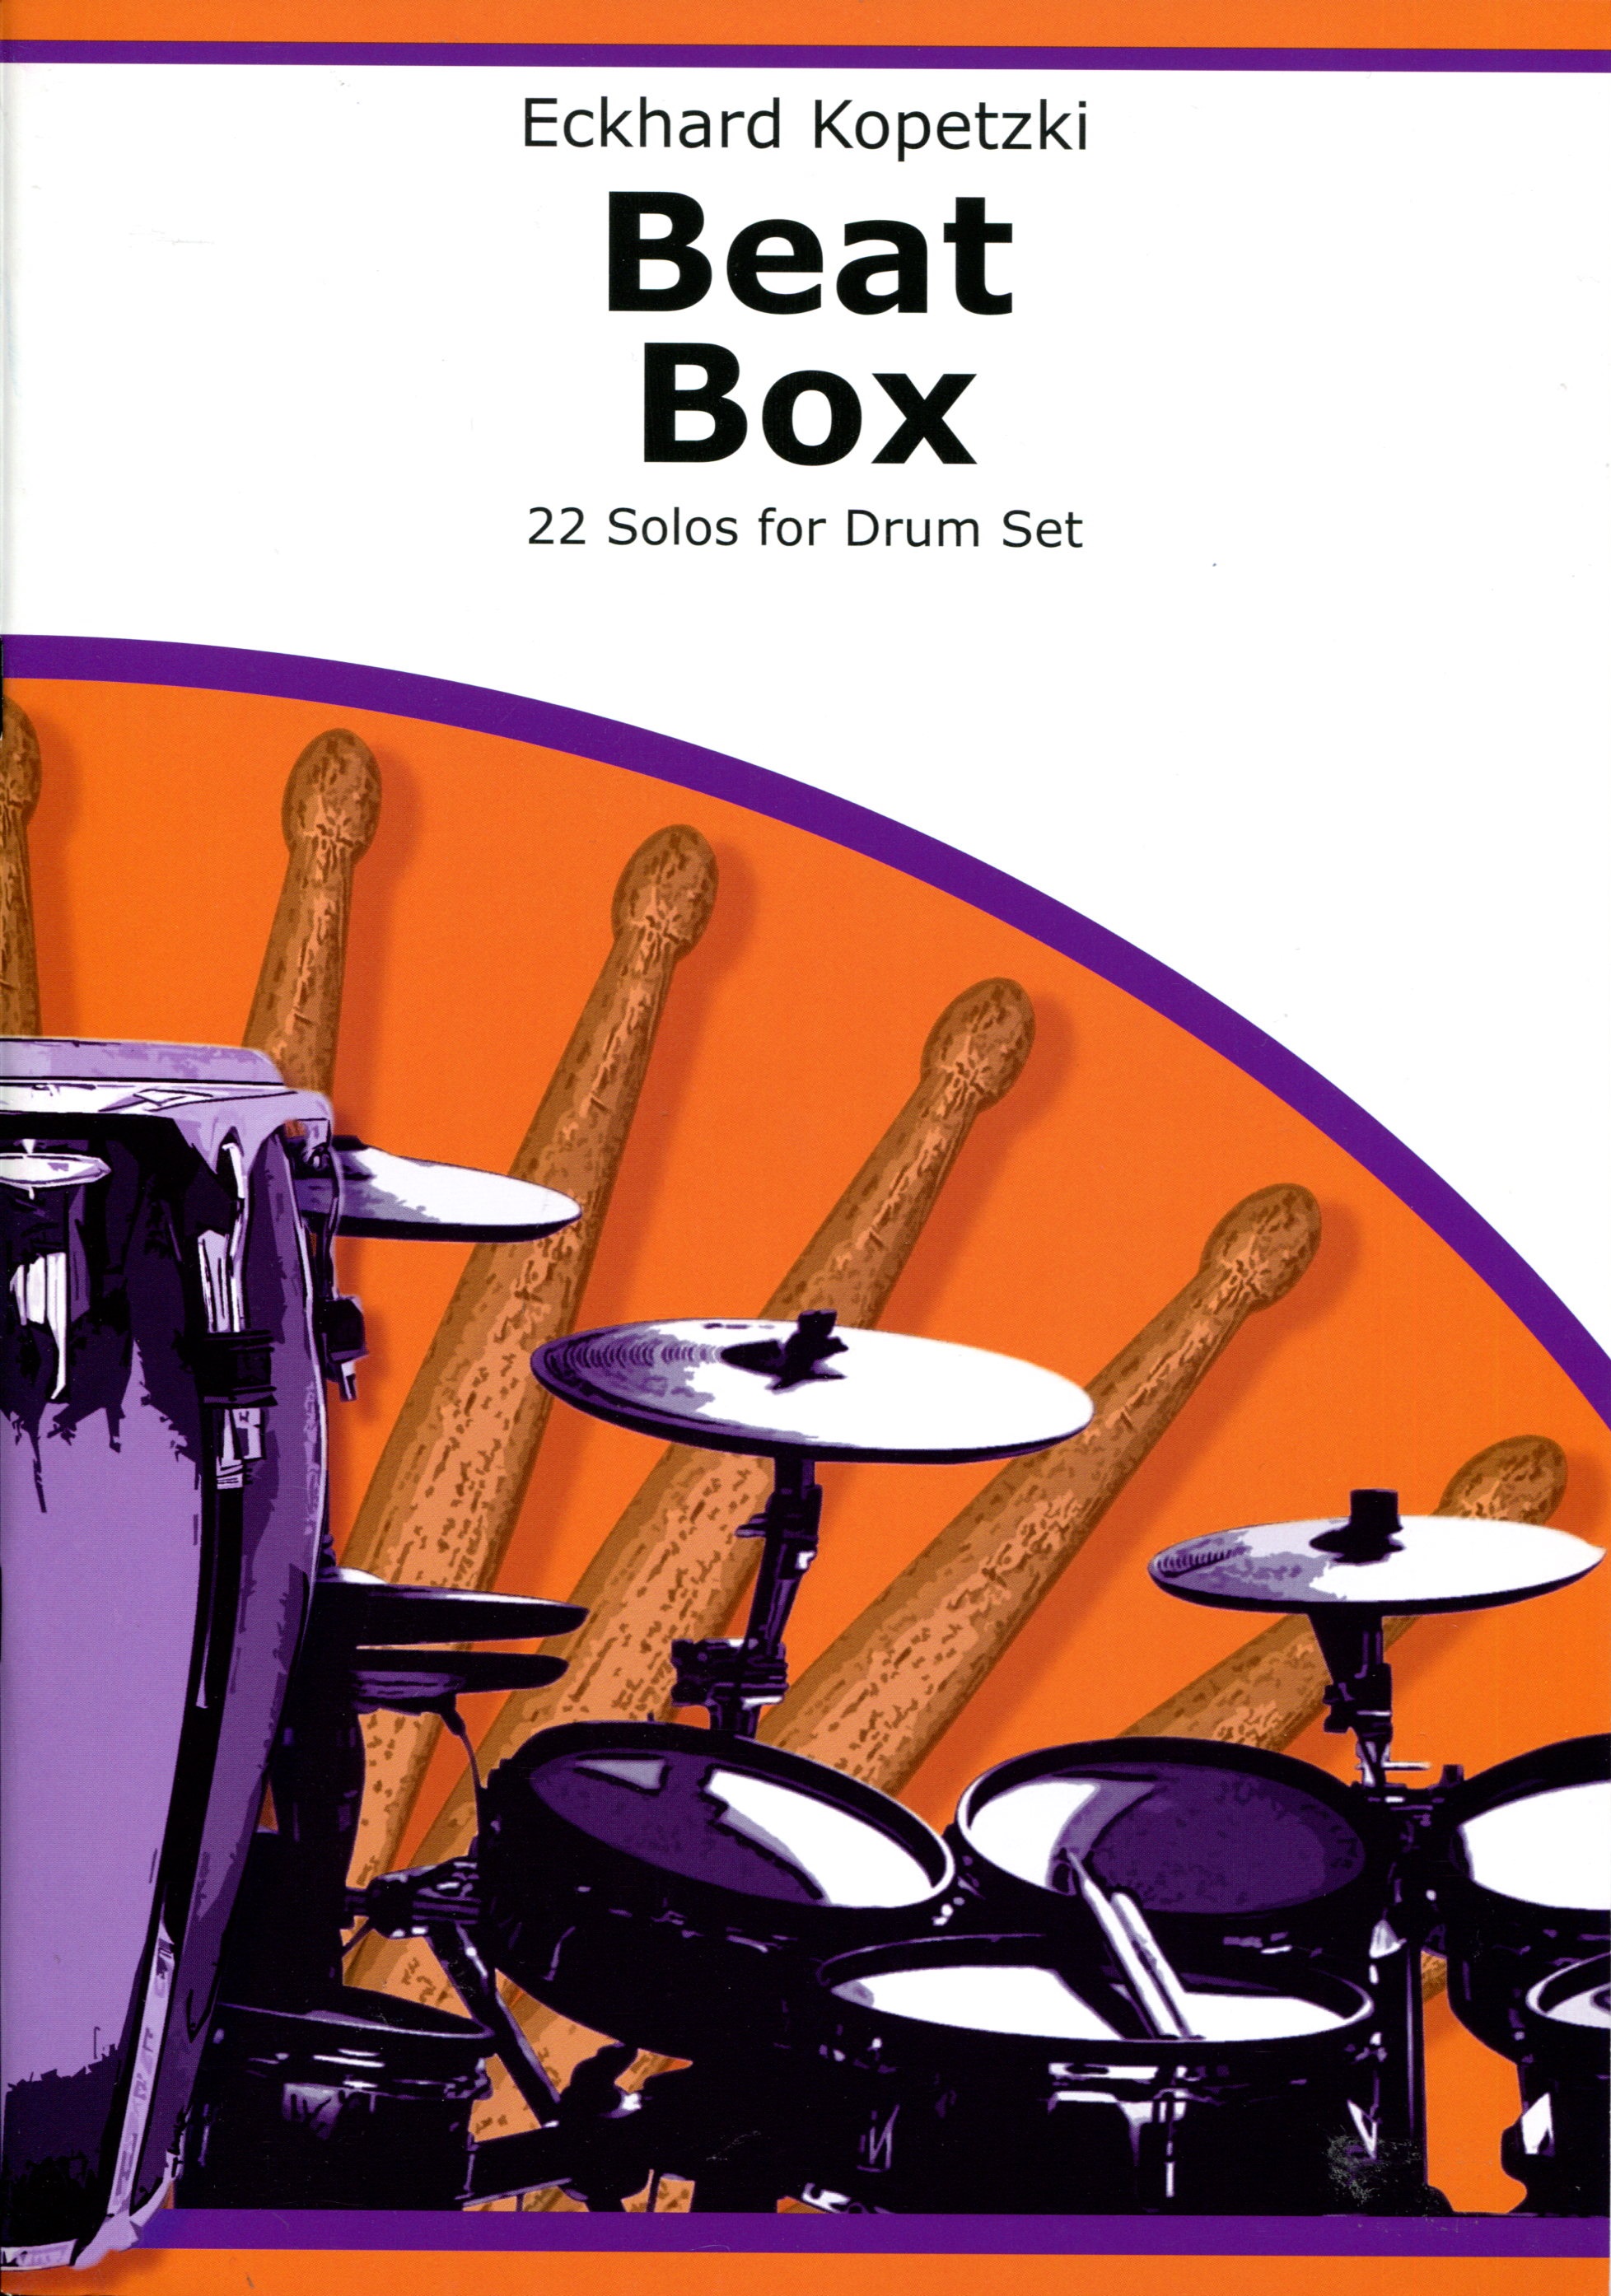 Beat Box - 22 Solos for Drum Set - Kopetzki